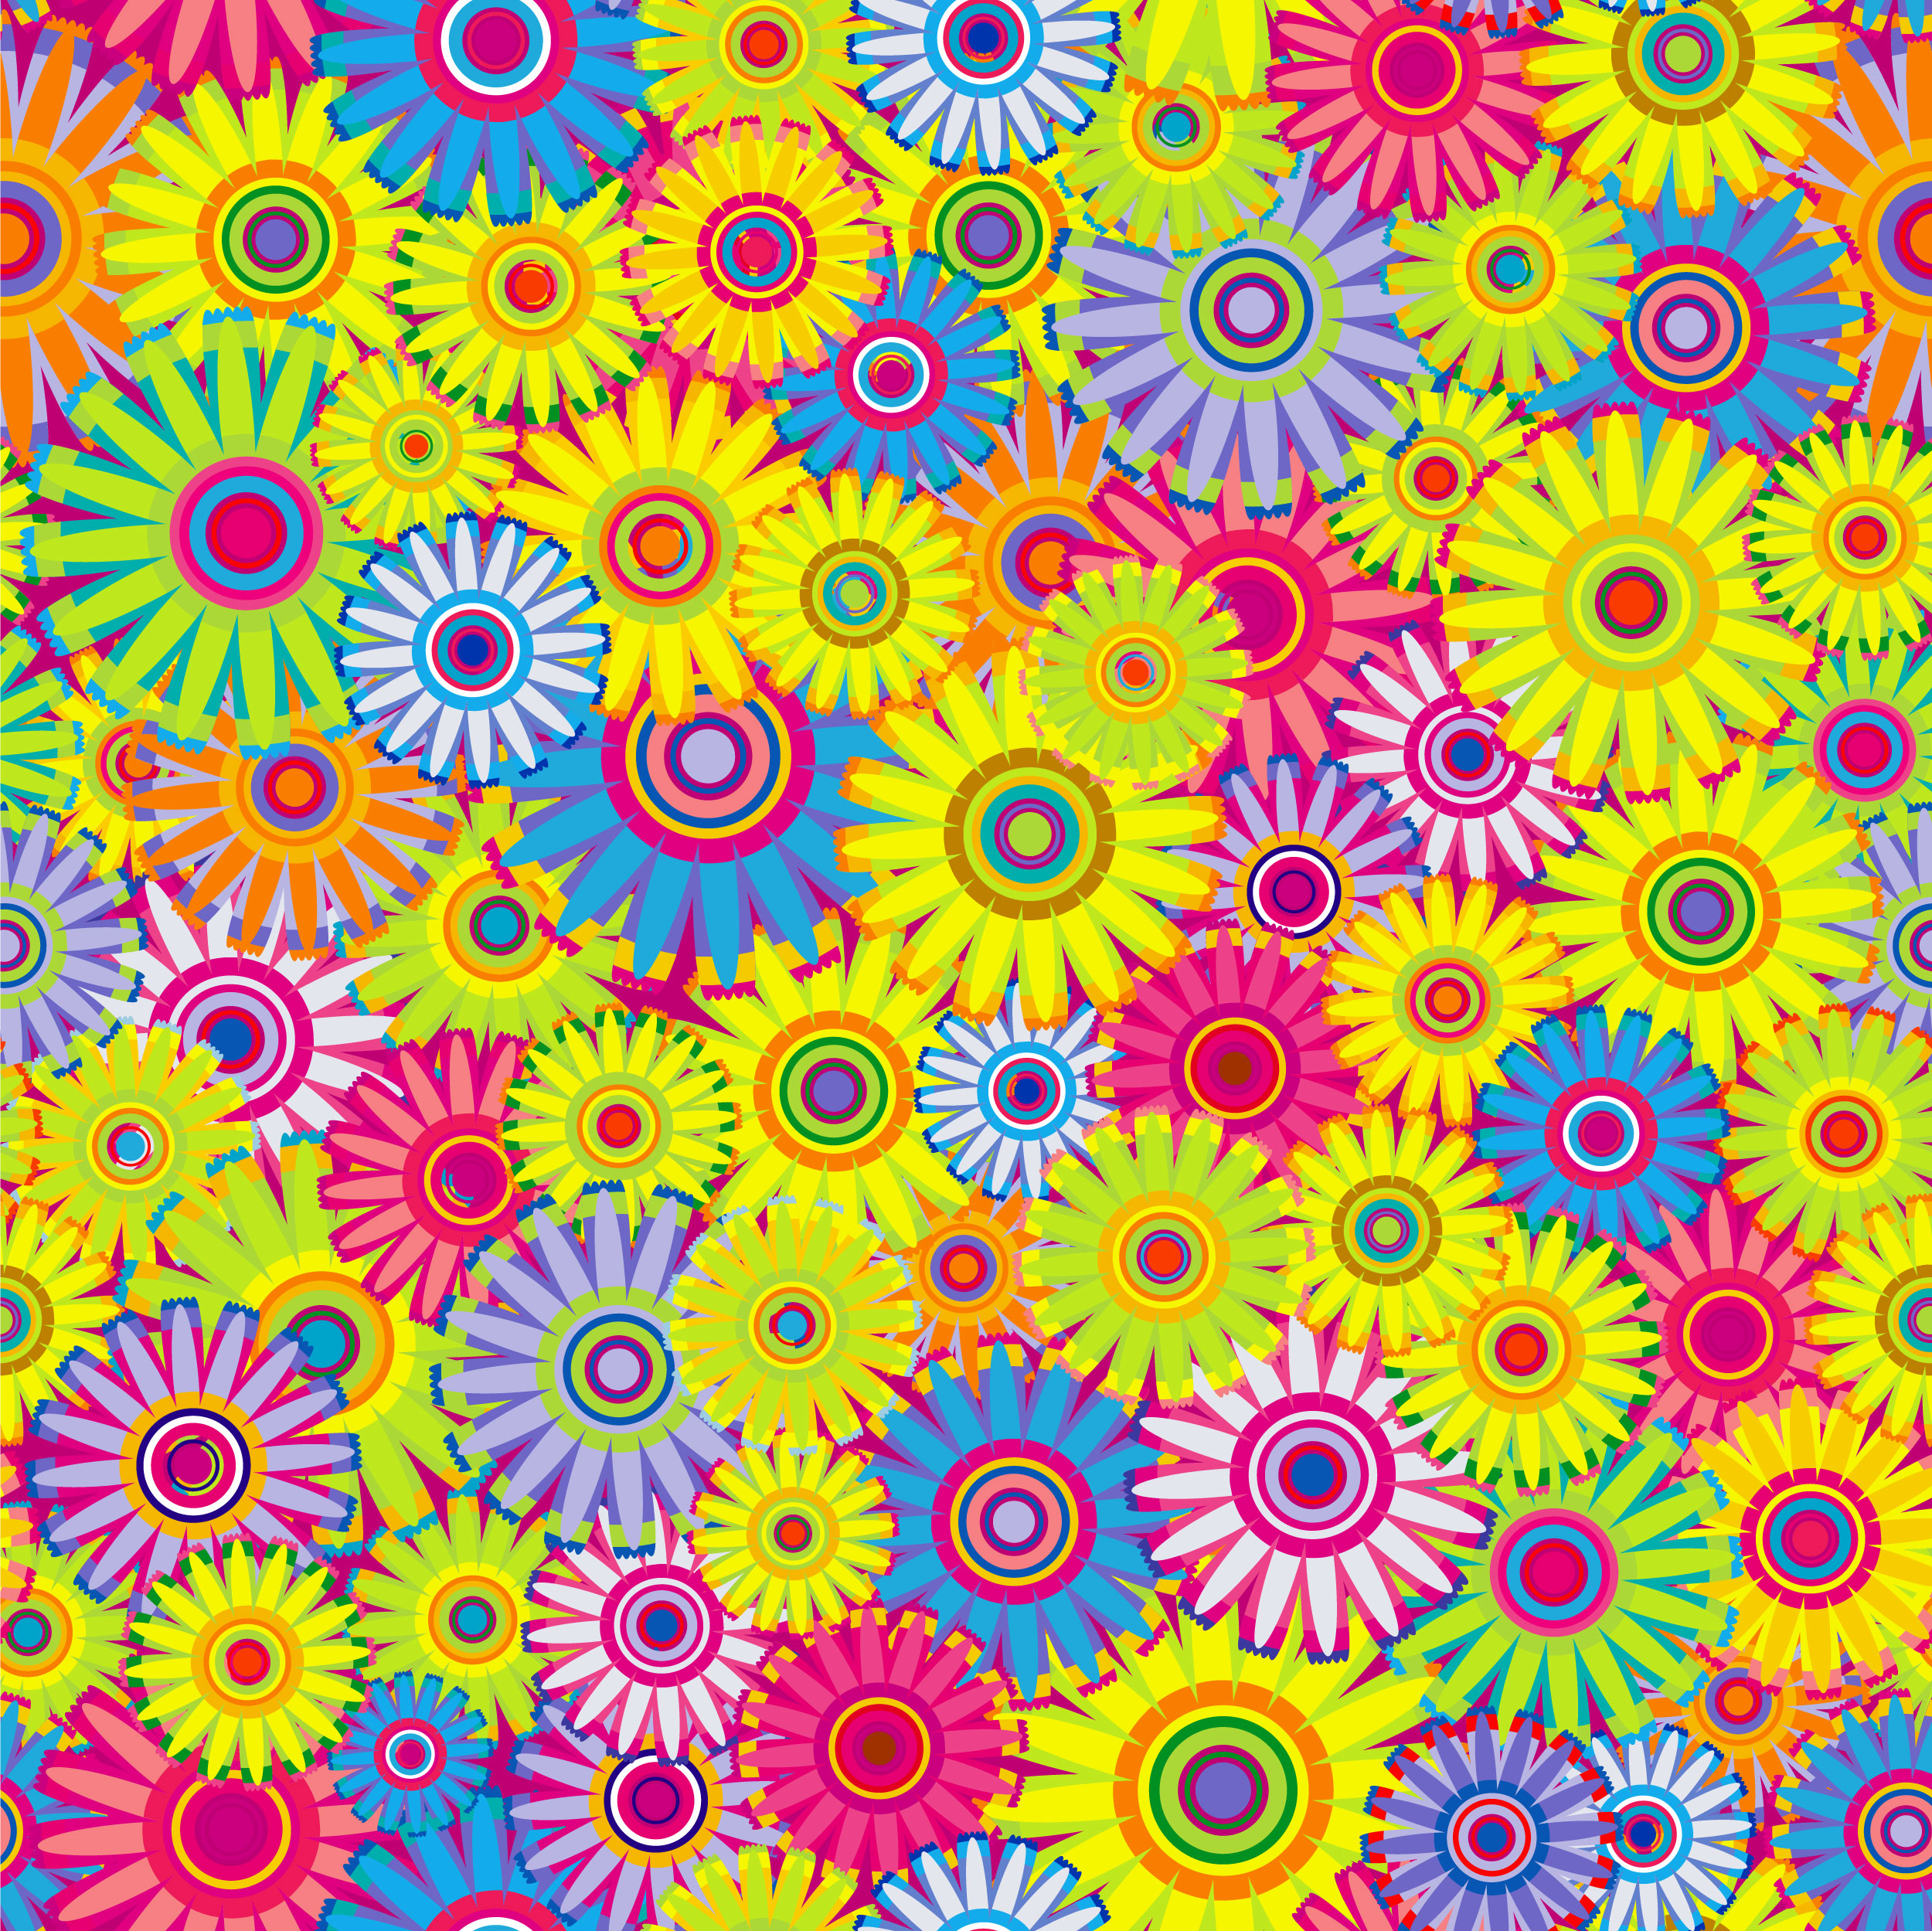 壁紙 背景イラスト 花の模様 柄 パターン No 124 カラフルフラワー